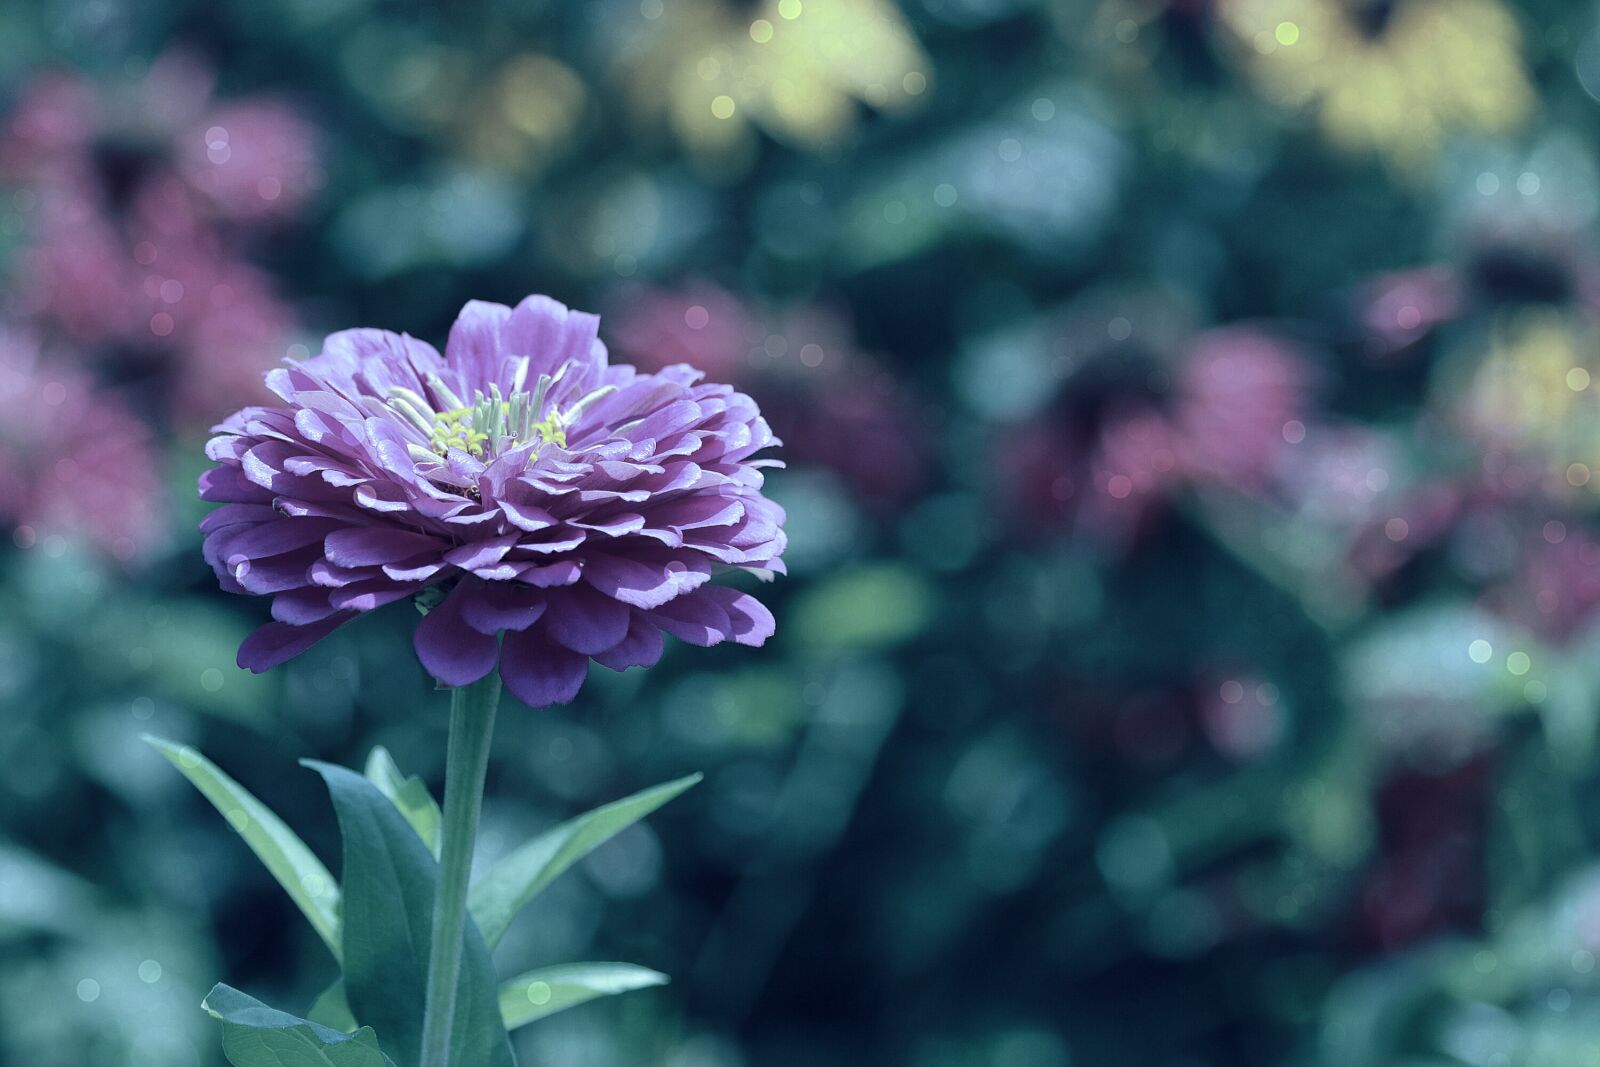 Canon EOS 750D (EOS Rebel T6i / EOS Kiss X8i) sample photo. Zinnia, garden, color photography